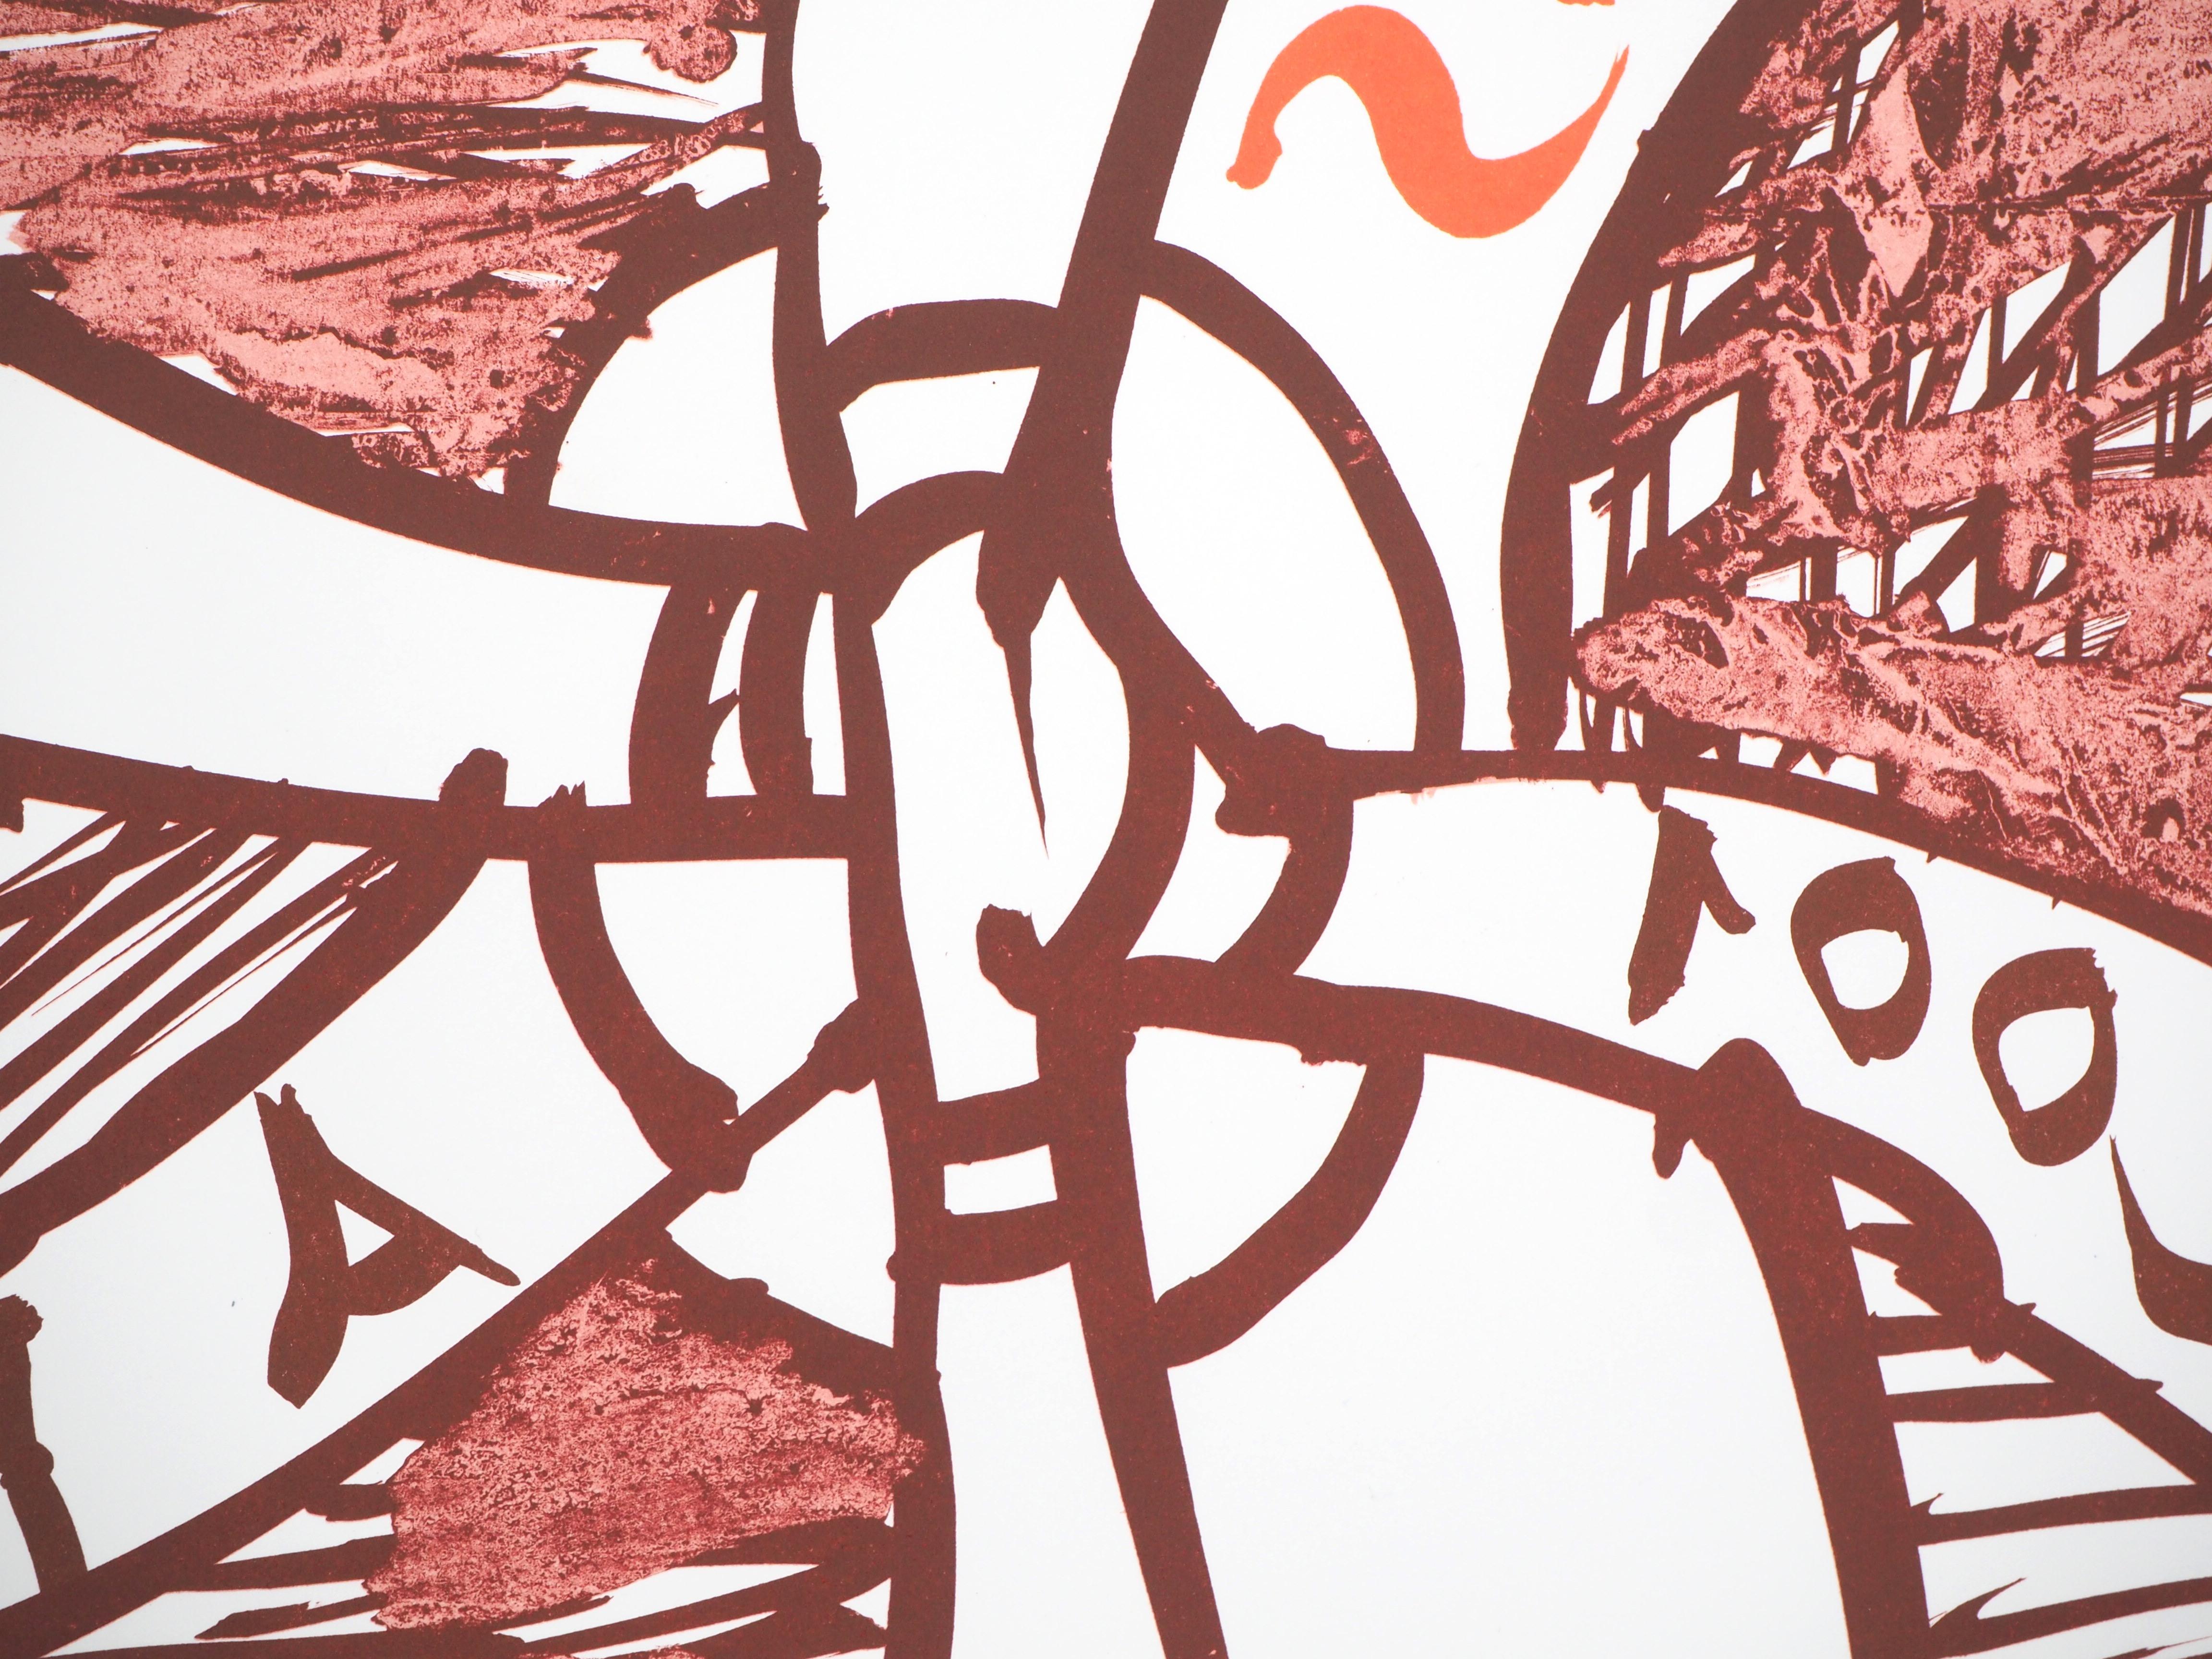 Pierre ALECHINSKY
The Wheel (Mois de l'Estampe), 2001

Original Lithograph (Clot, Bramsen & Georges workshop)
Printed signature in the plate
On paper 86 x 59 cm (c. 34 x 24 inch)
Created for Le Mois de l'Estampe, Paris 2001

Excellent condition